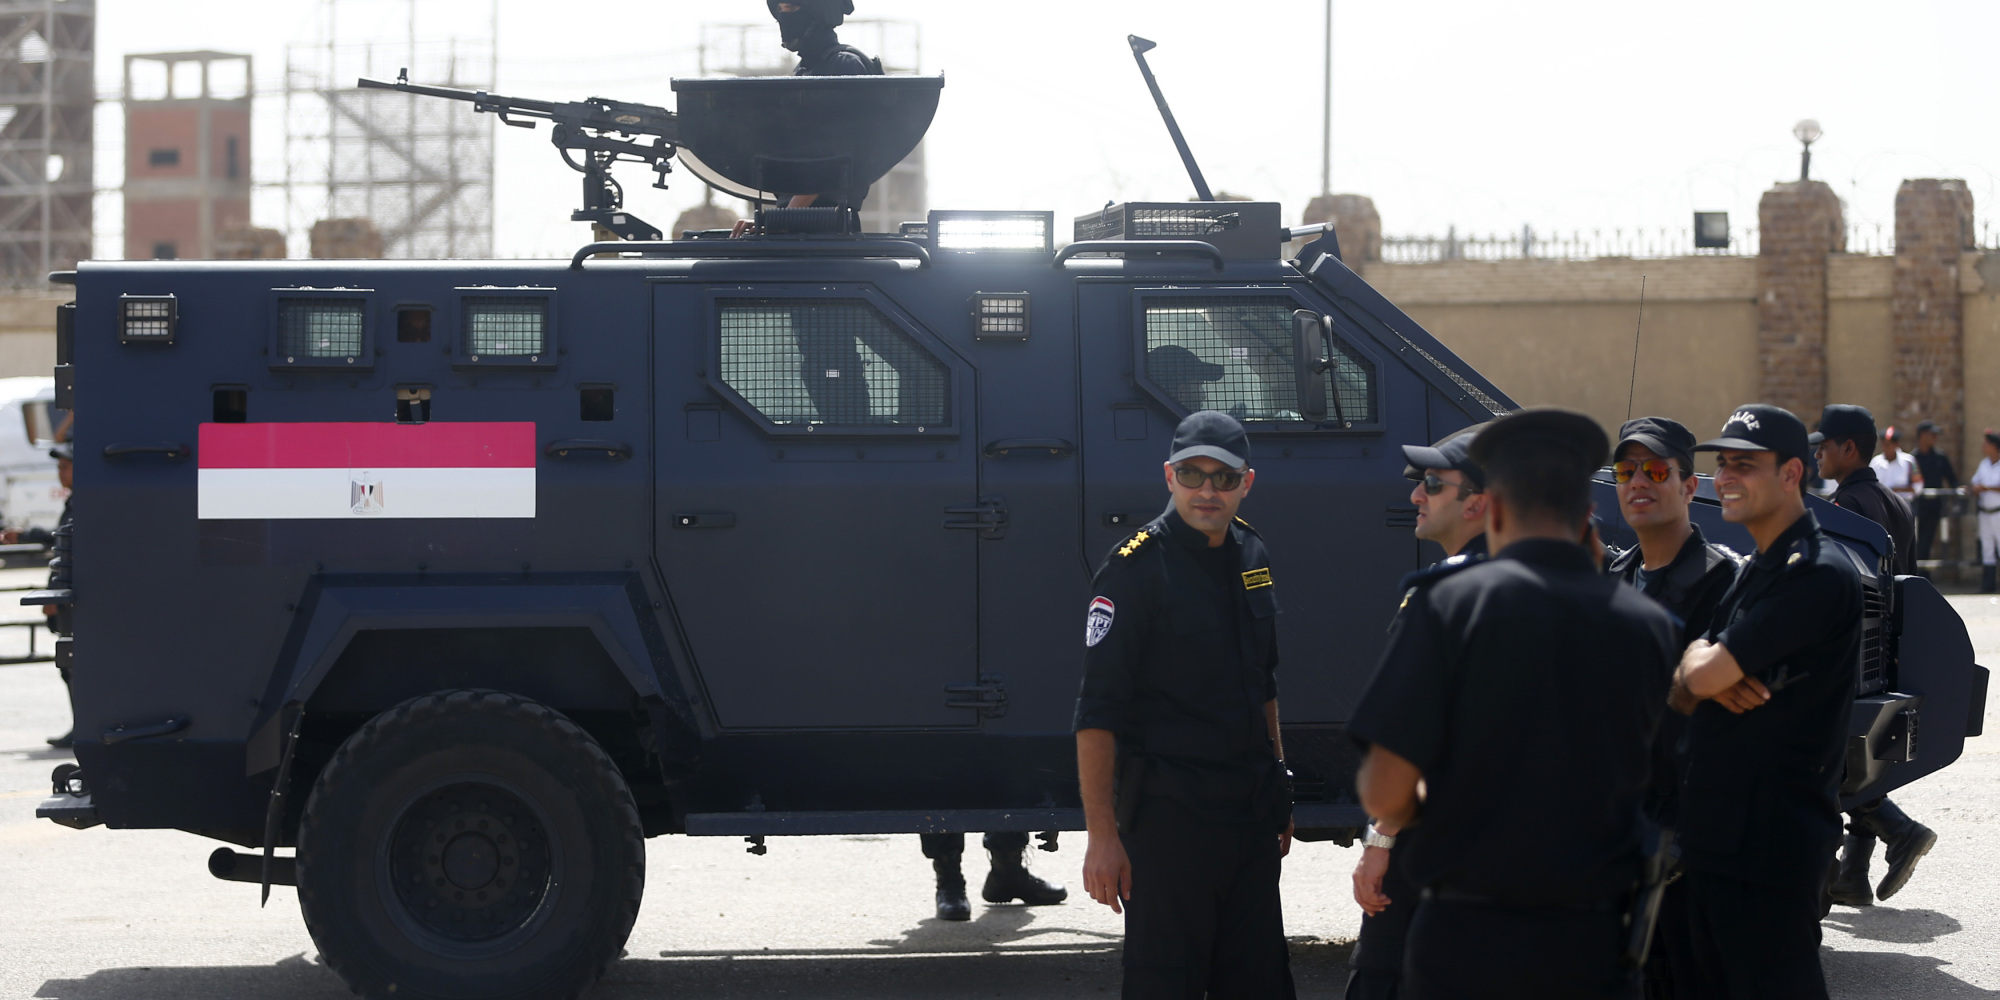 الشرطة المصرية تقتل 8 من الإخوان المسلمين في صحراء الصعيد.. قالت إنهم سعوا لتنفيذ هذا المخطط